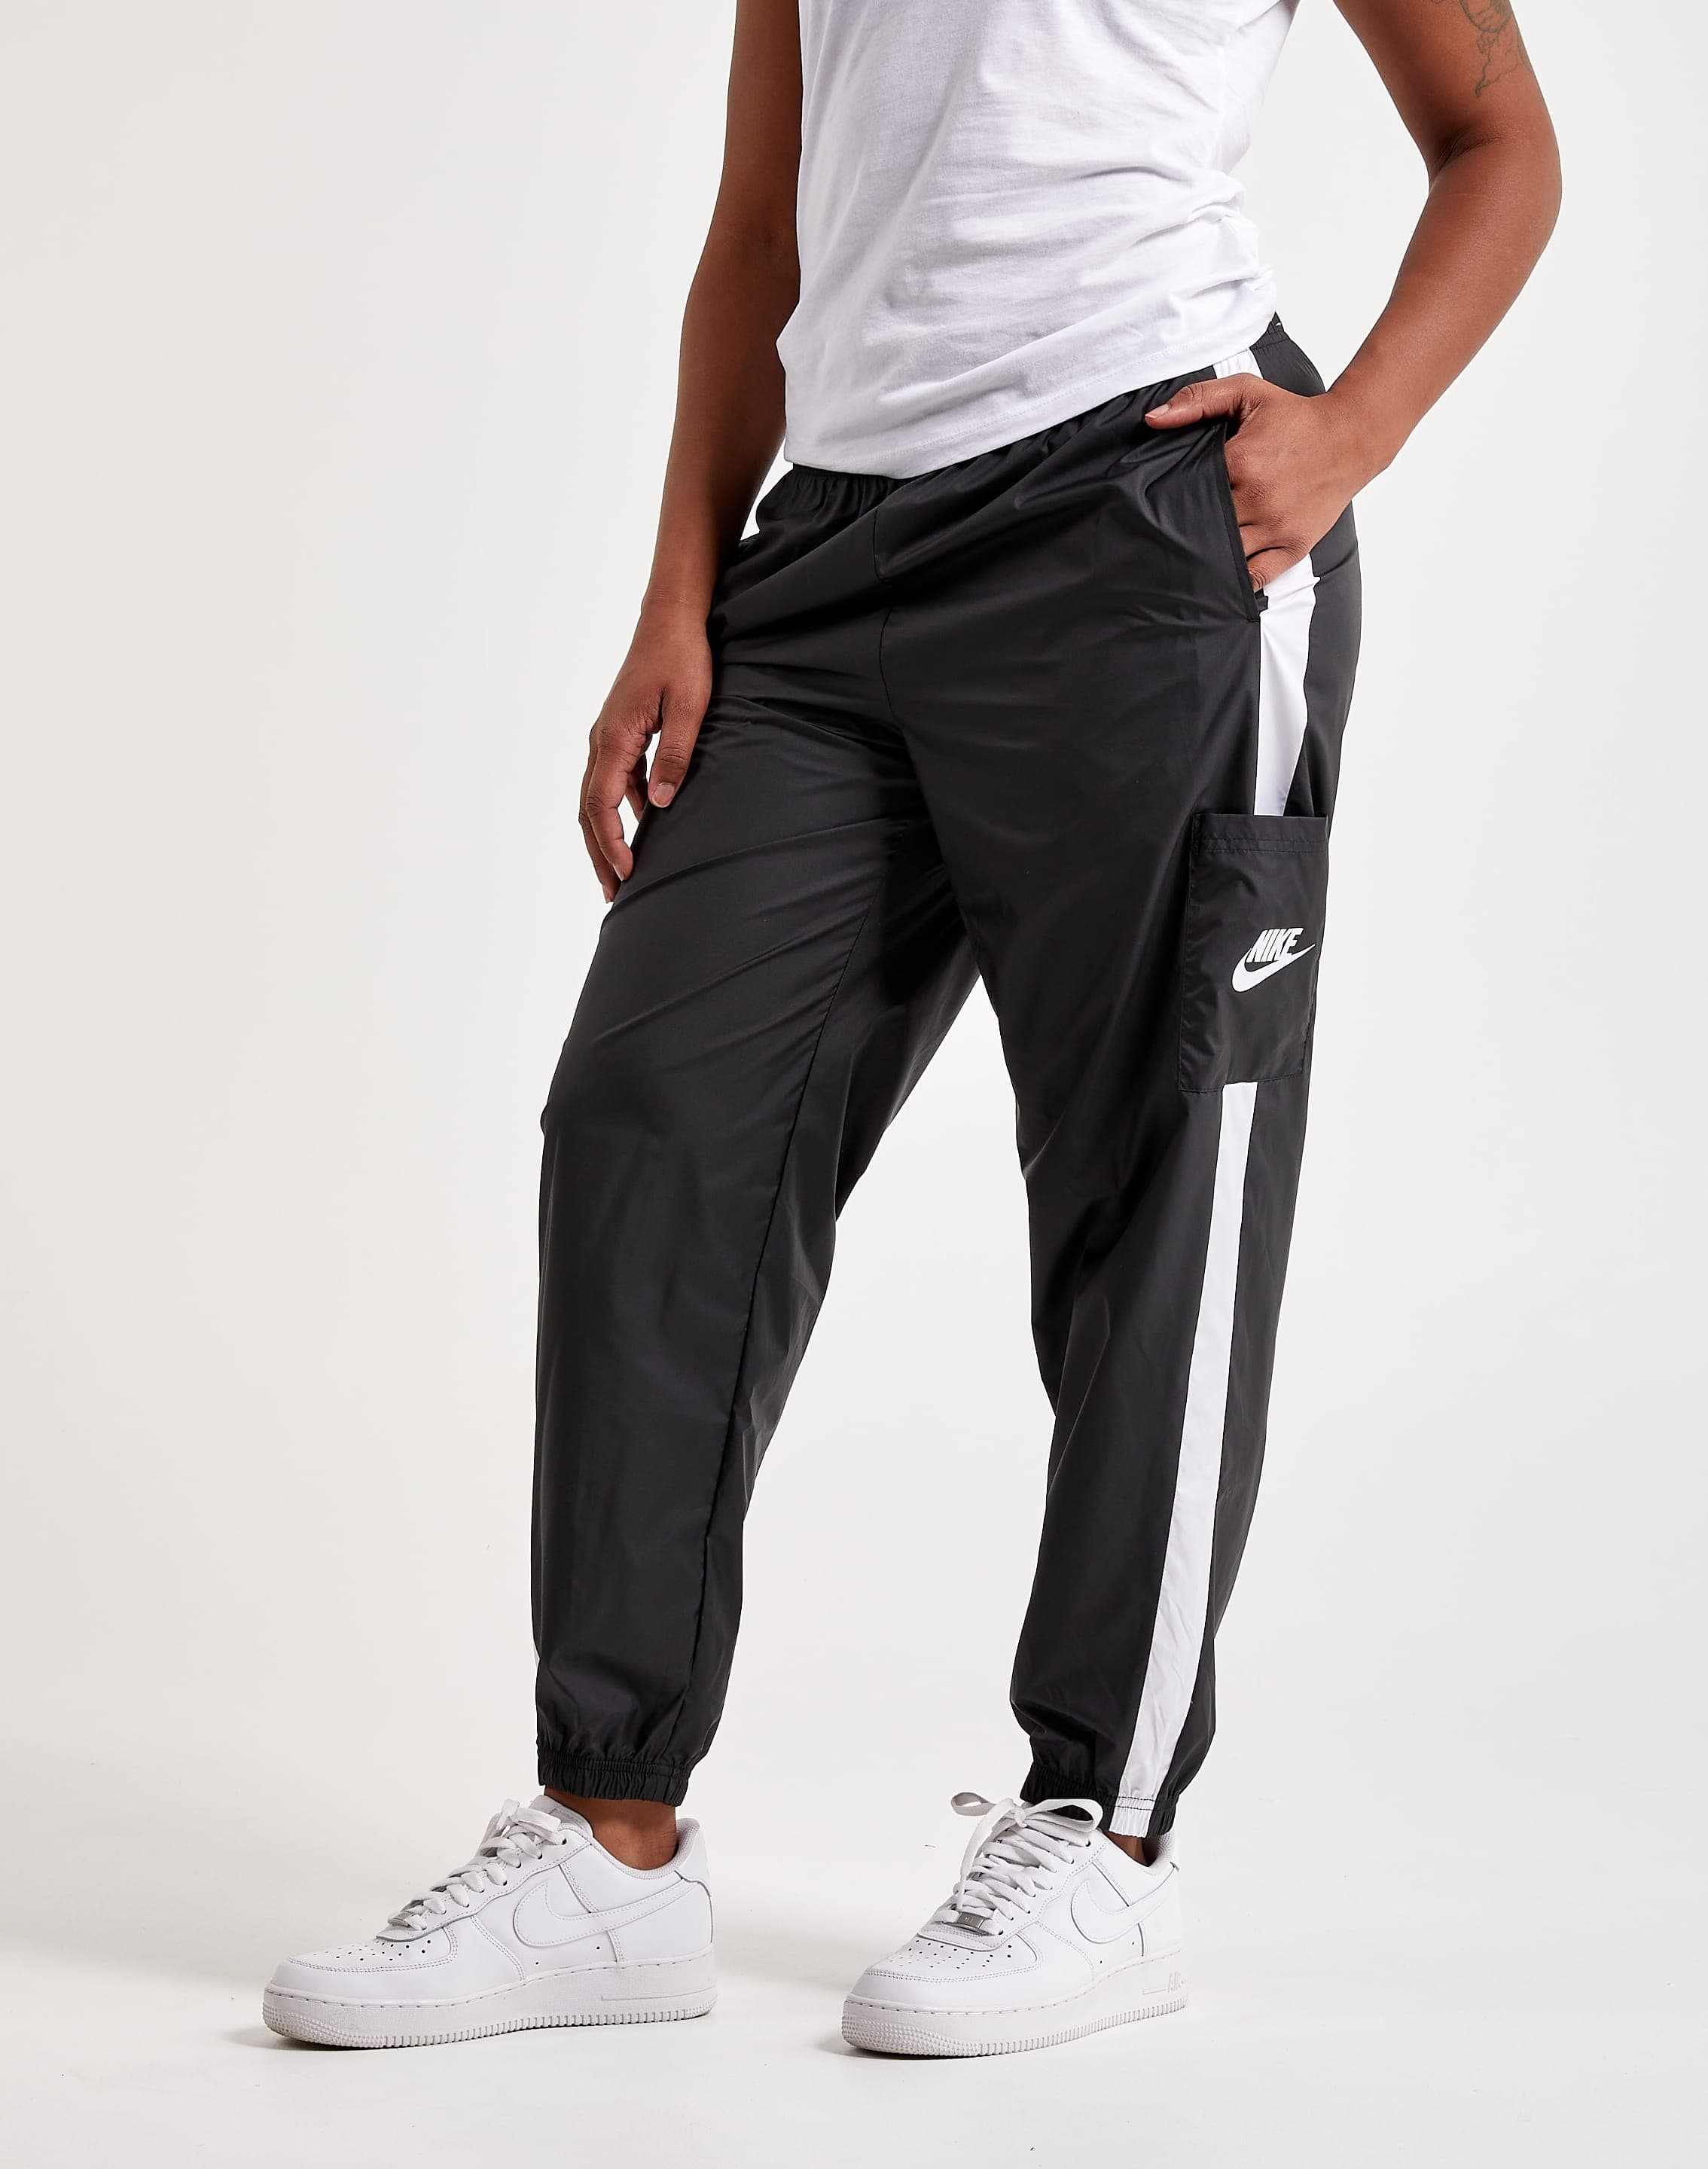 Nike Woven Pants